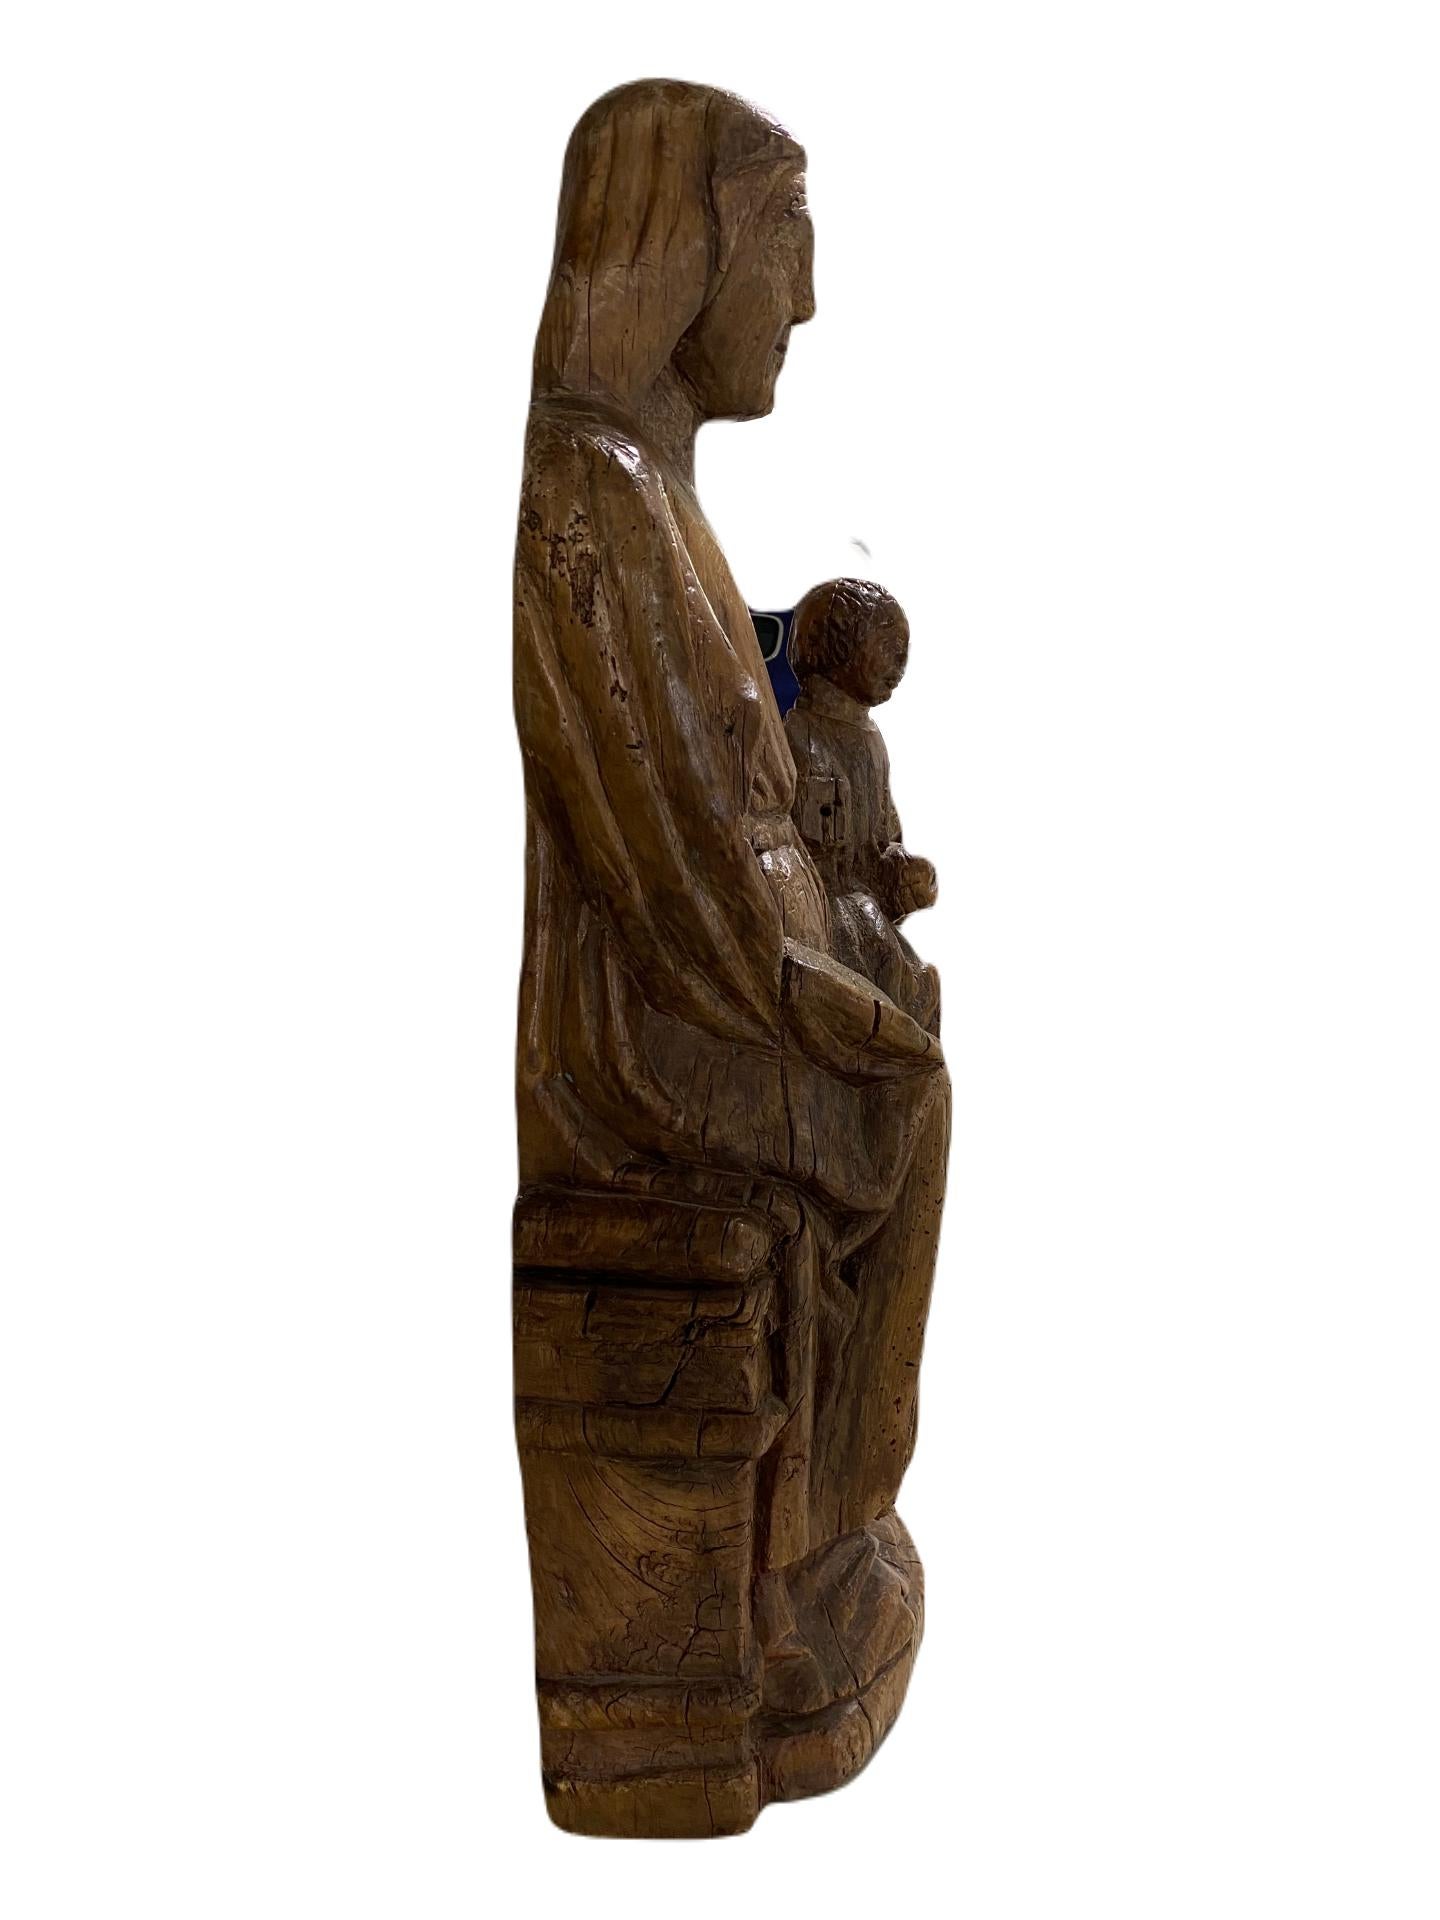 La Vierge et l'enfant intronisés  - Sculpture de Unknown